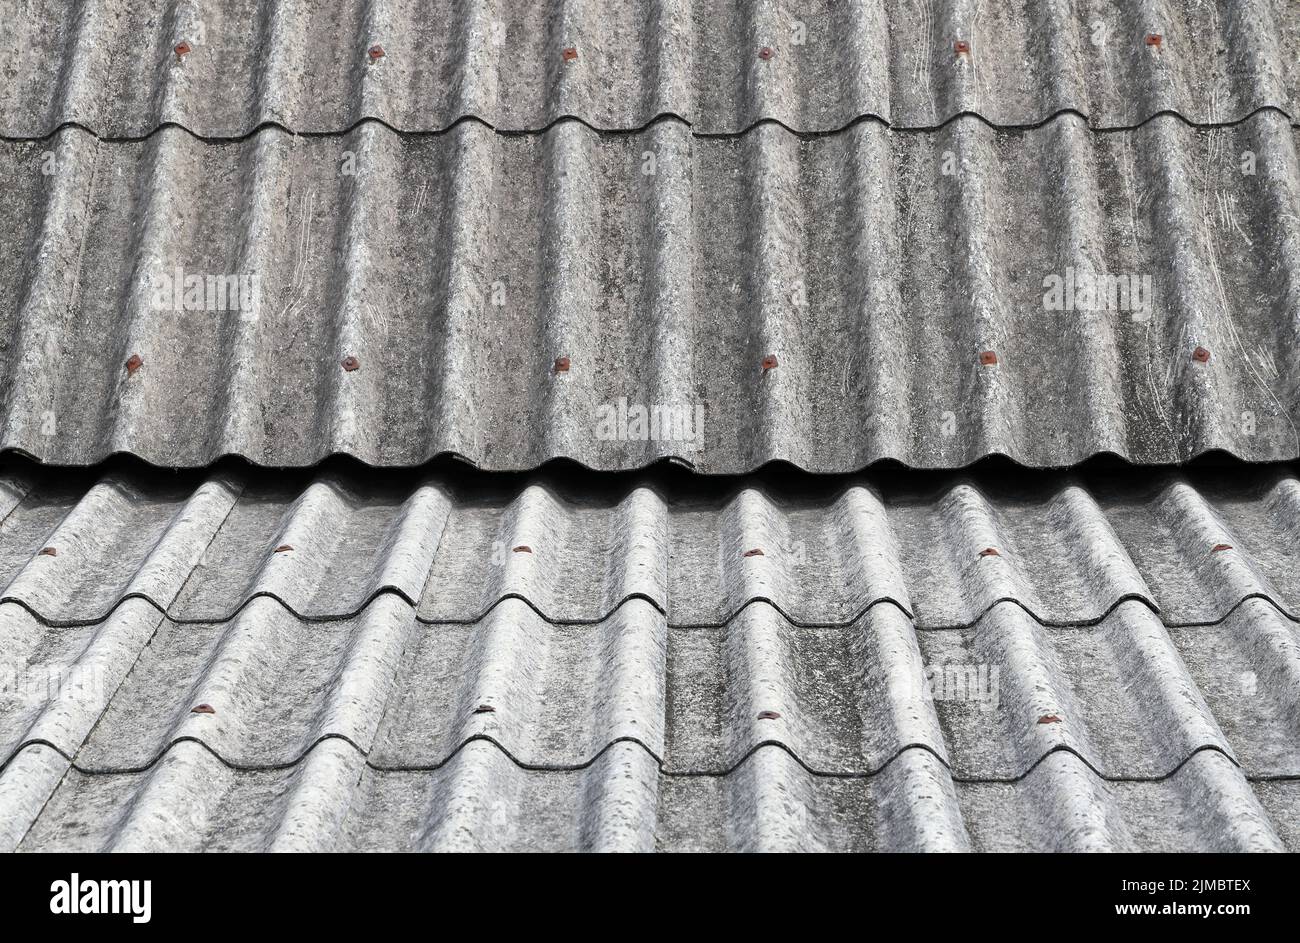 Anciennes feuilles de couverture en ciment d'amiante, toit en amiante, tôle de toit en ciment d'amiante ondulé, panneaux ondulés, texture ardoise grise, toit en ardoise ondulée grise. Banque D'Images